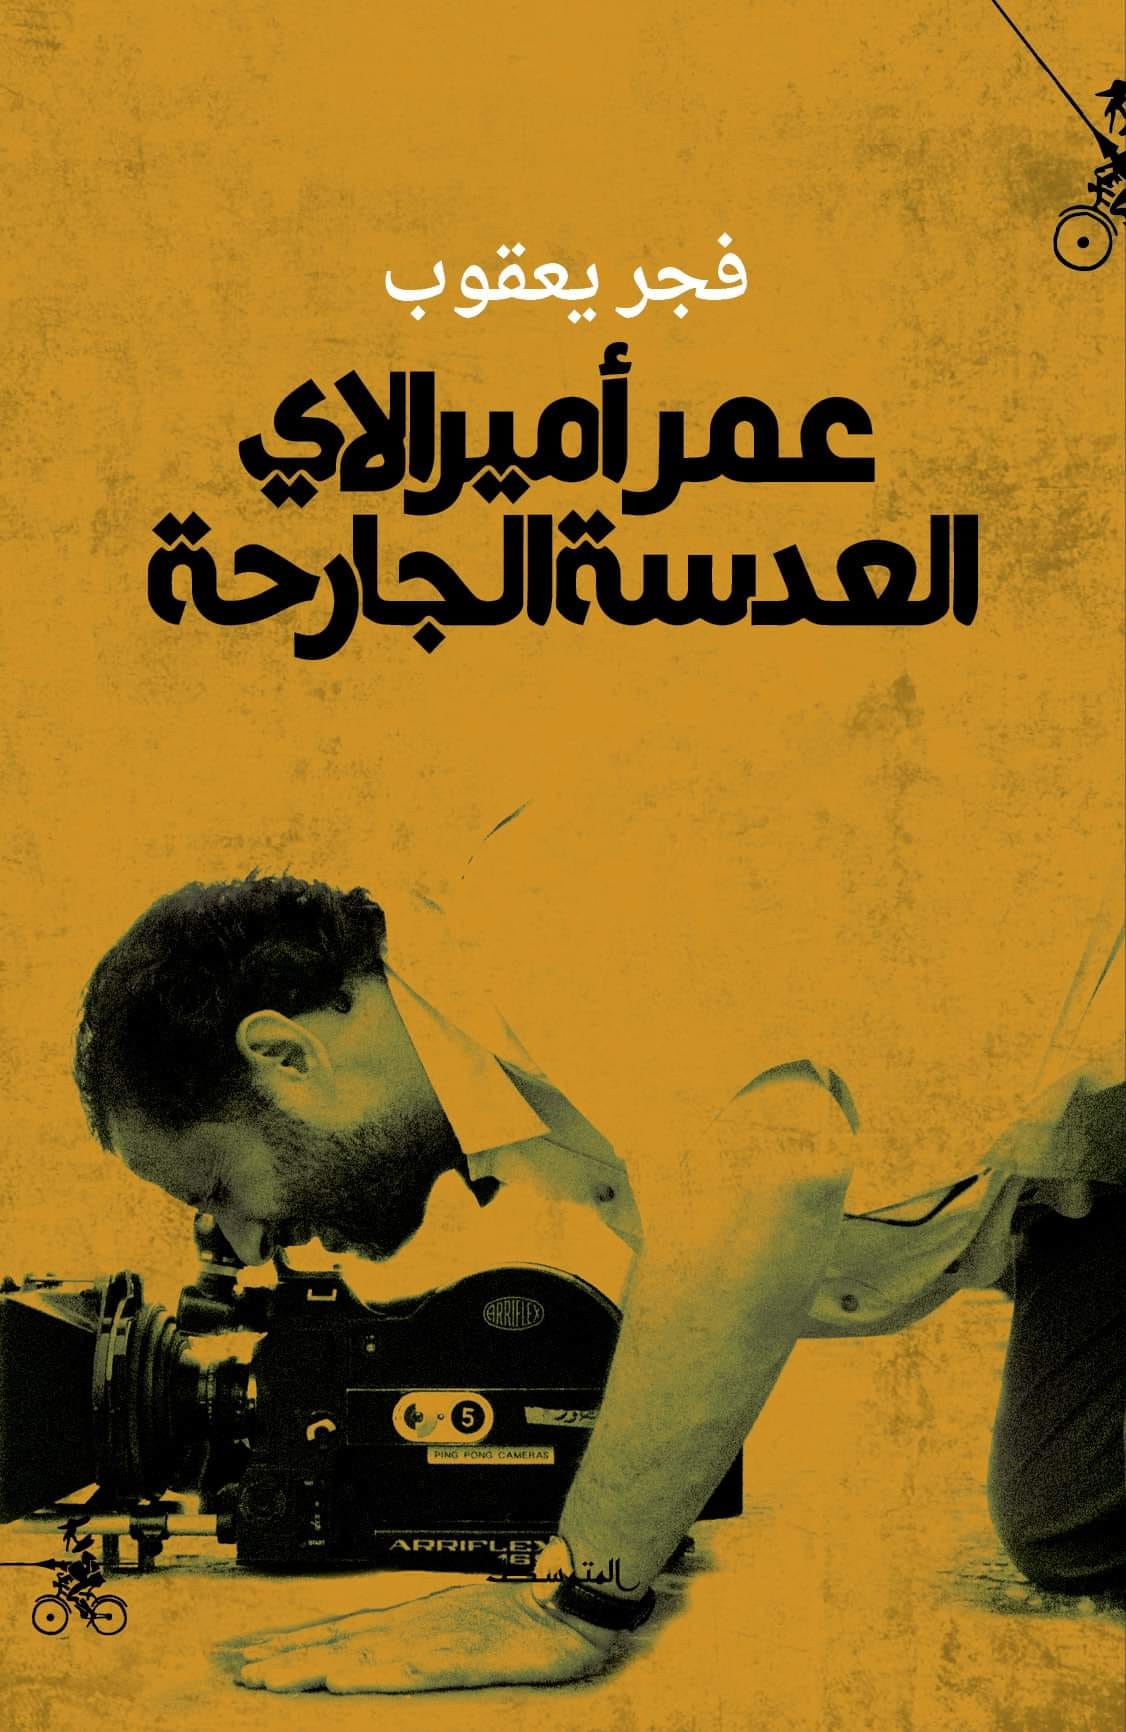 غلاف كتاب عمر أميرالاي العدسة الجارحة.jpg